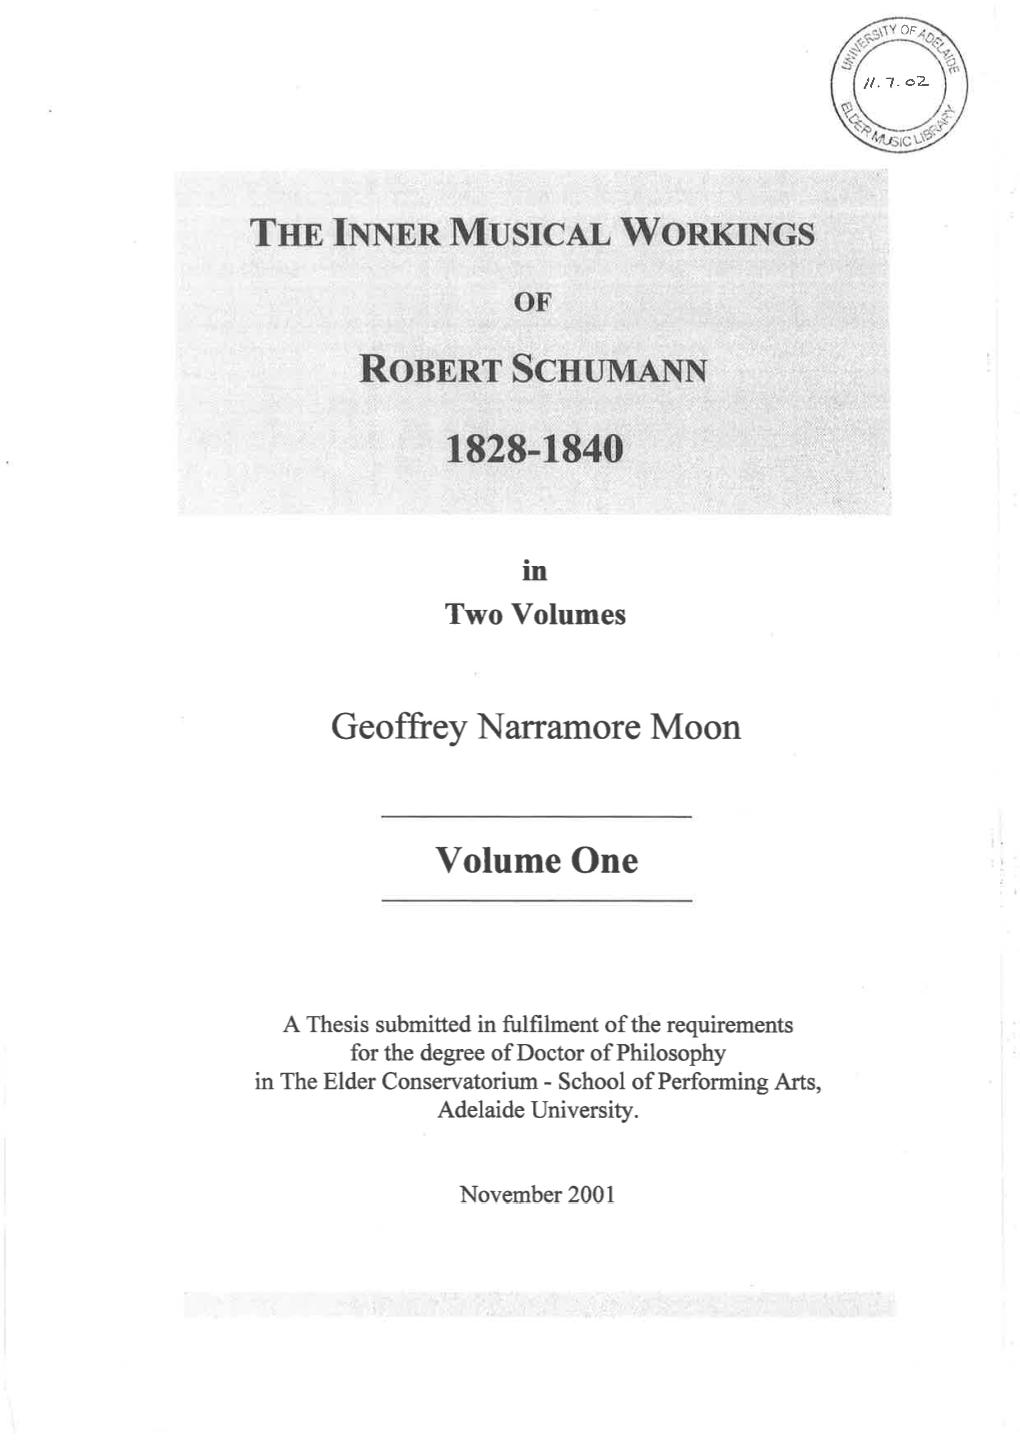 The Inner Musical Workings of Robert Schumann, 1828-1840